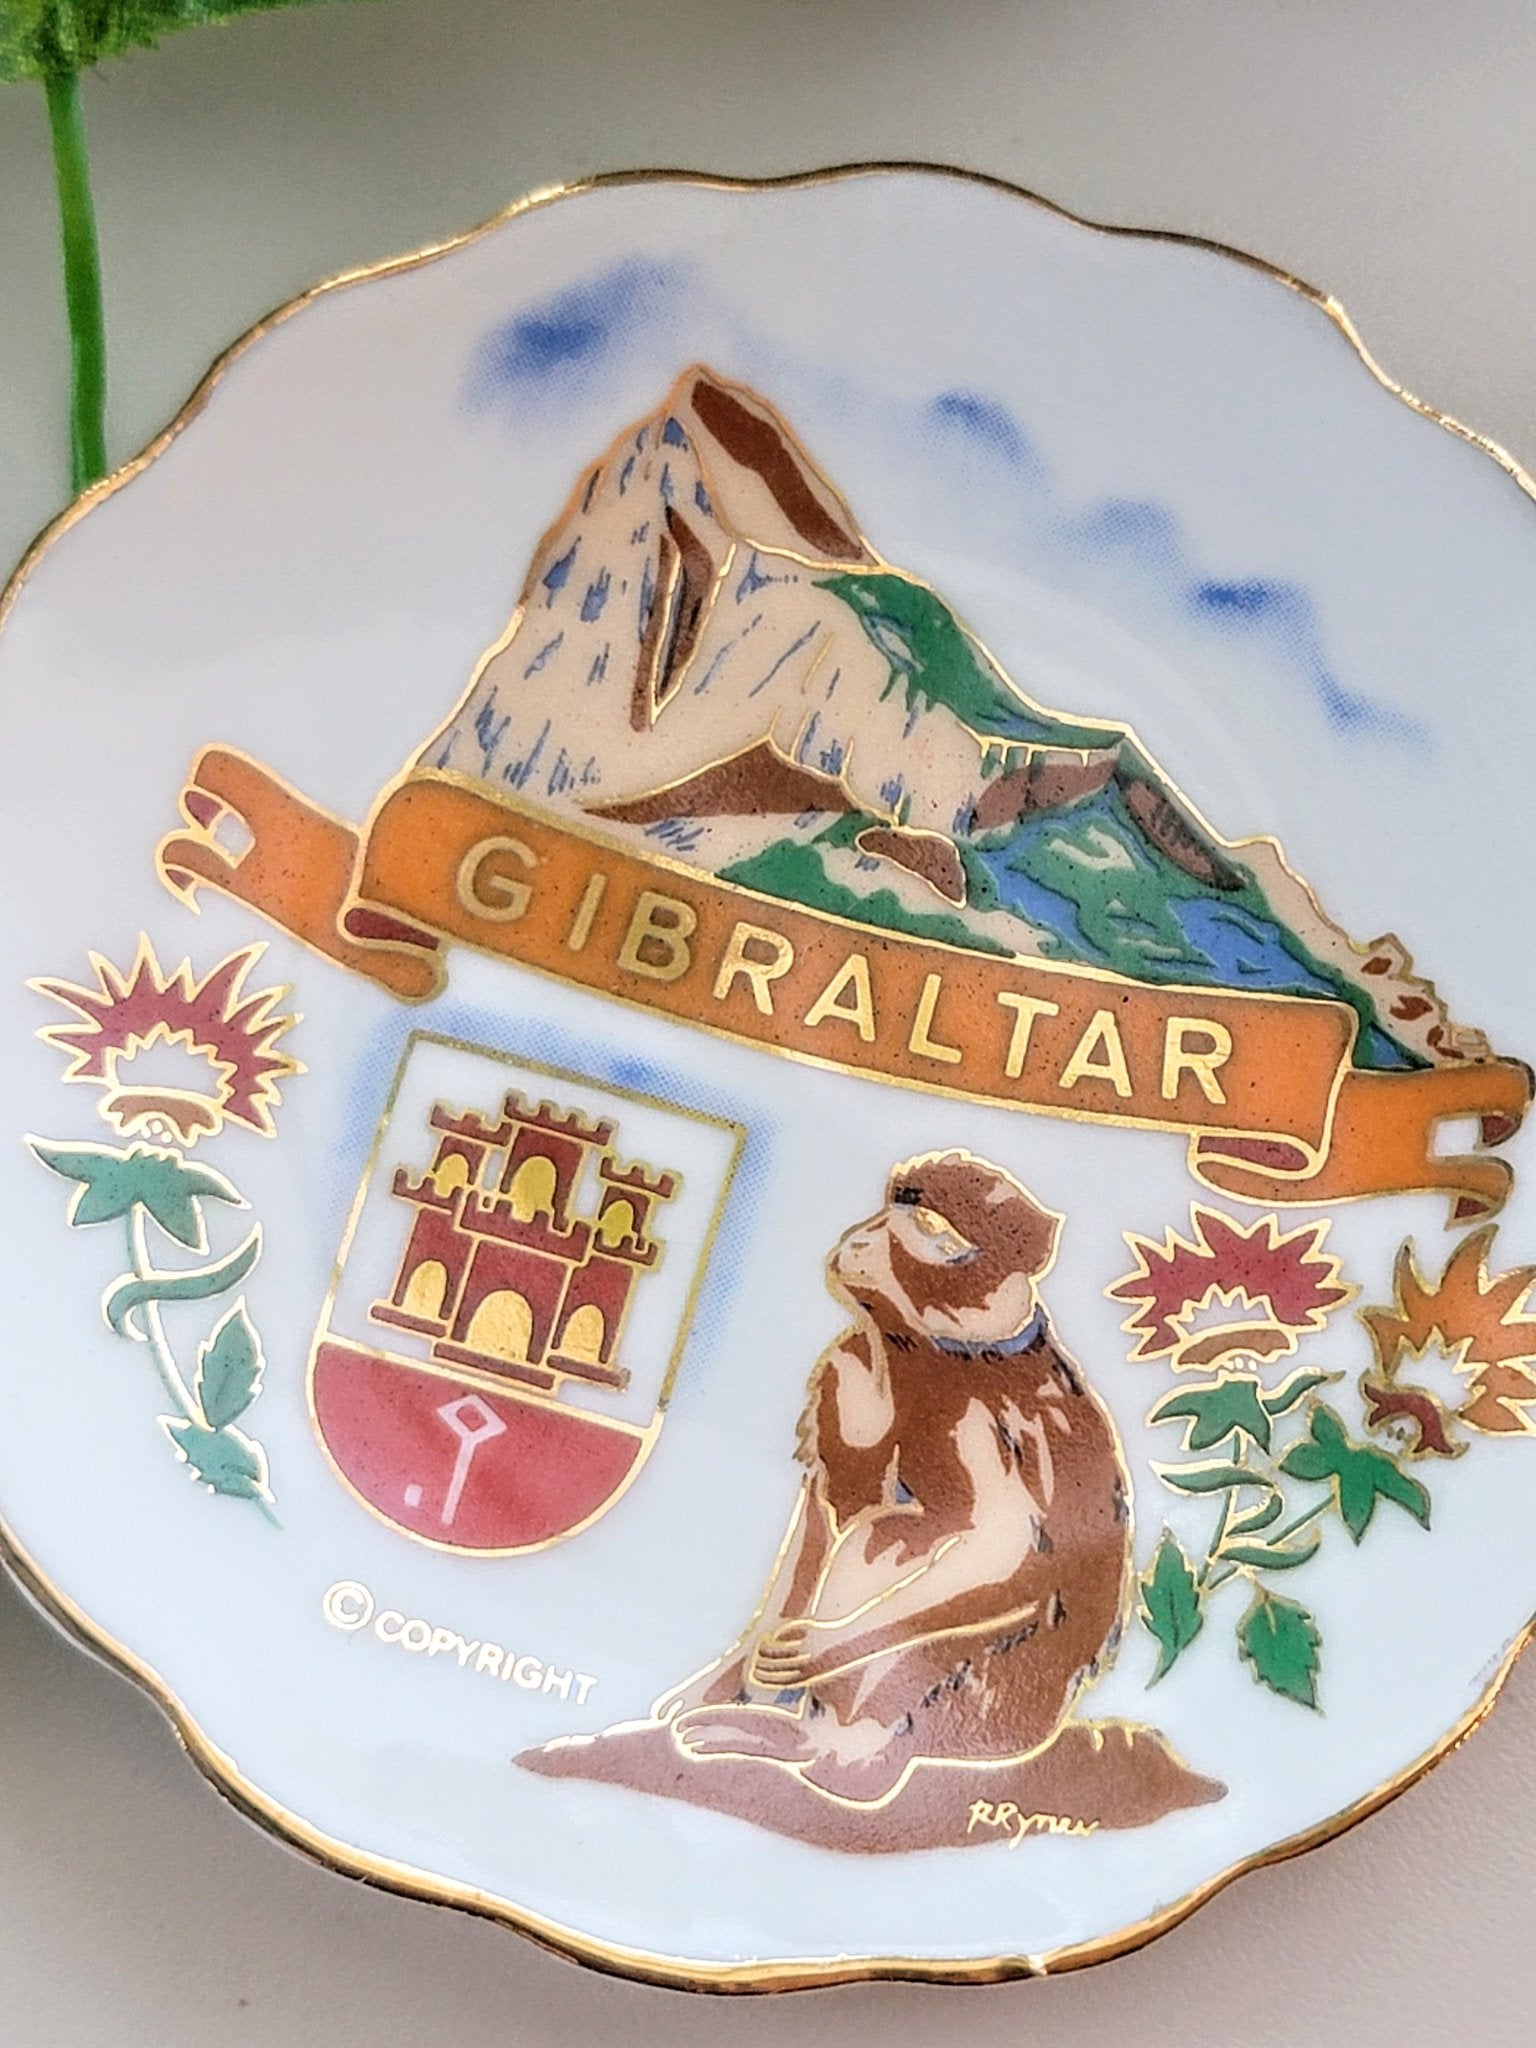 Gibraltar Plate - Smash's Stashes